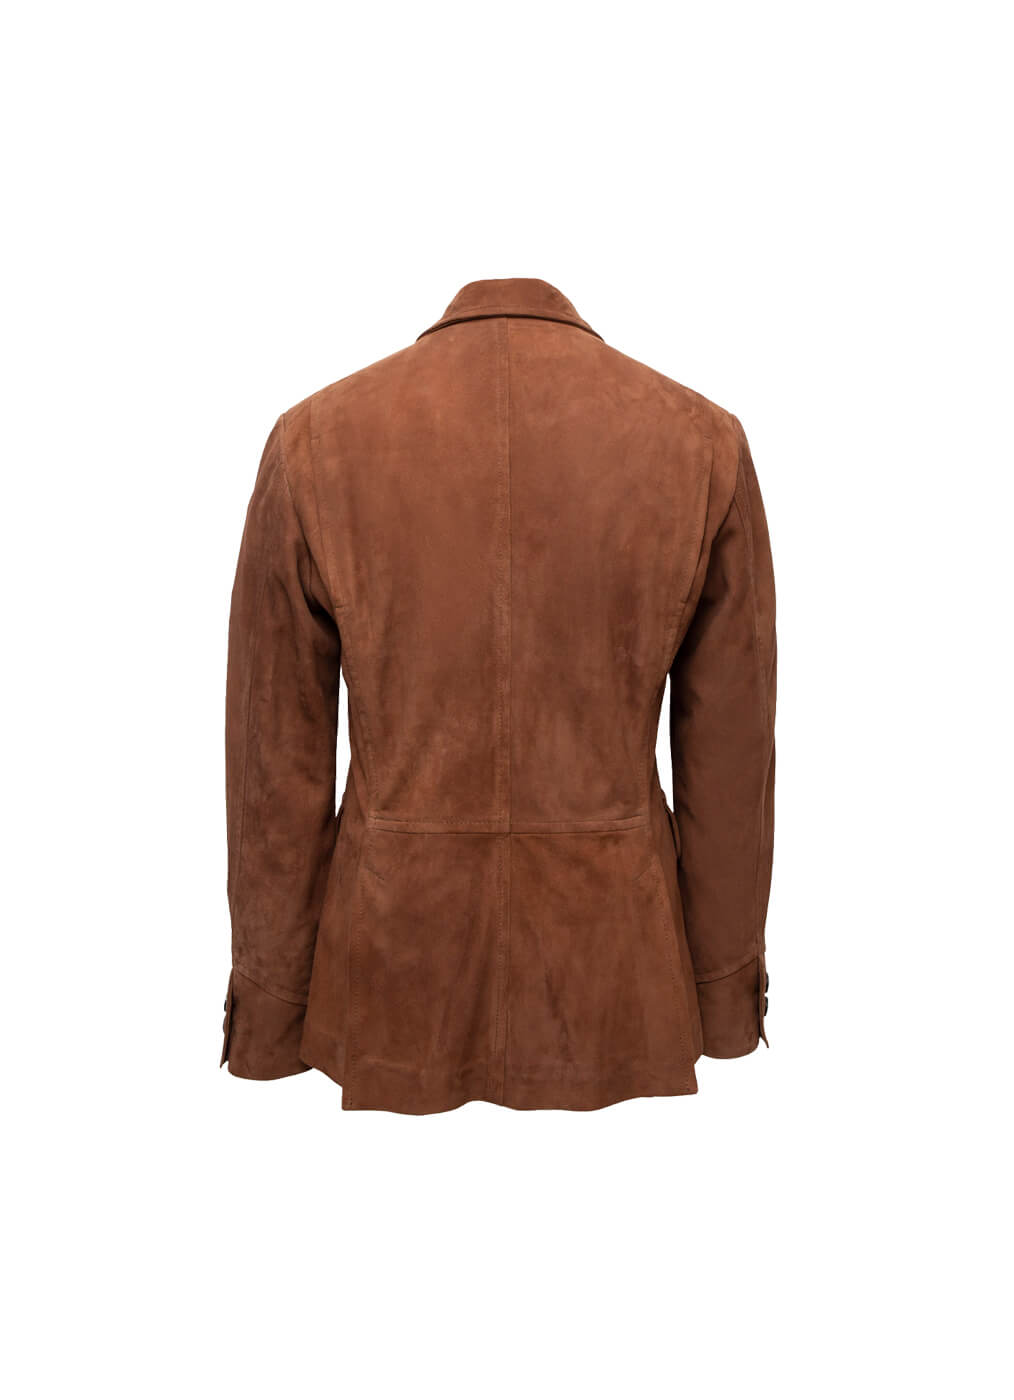 Goat Leather Jacket “East Coast”, nougat